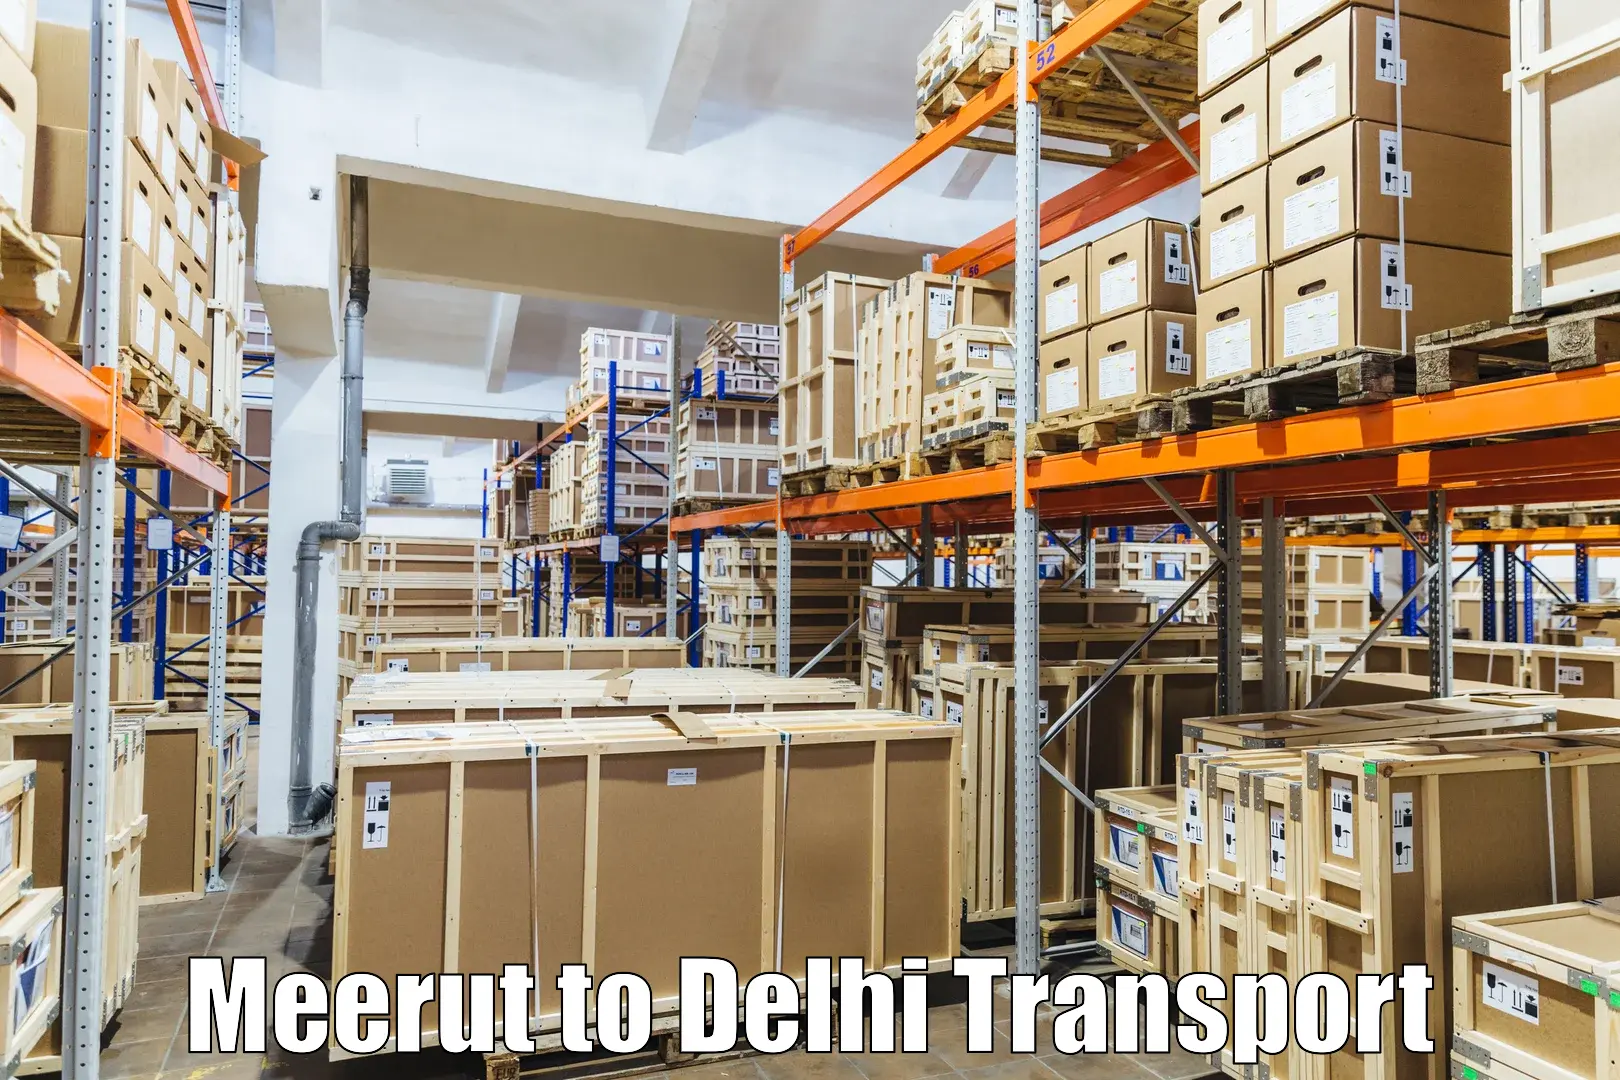 Delivery service Meerut to IIT Delhi